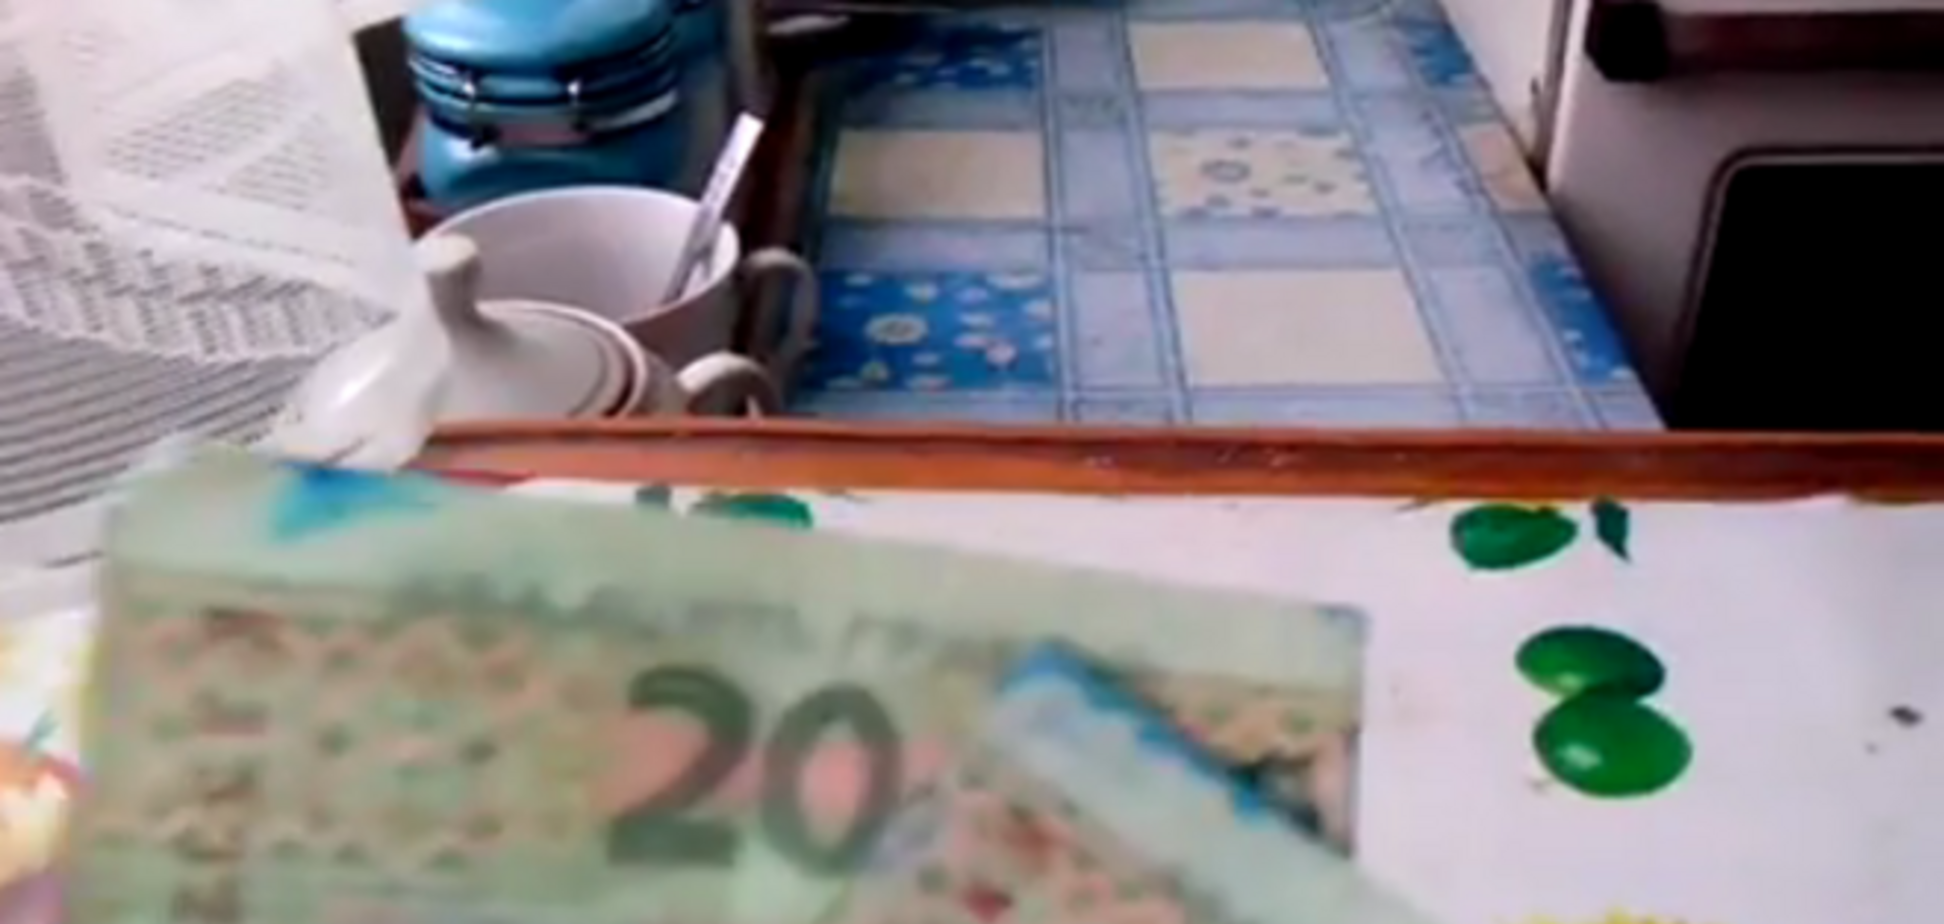 В Алчевске выдали зарплату мечеными деньгами: видео с испорченными купюрами